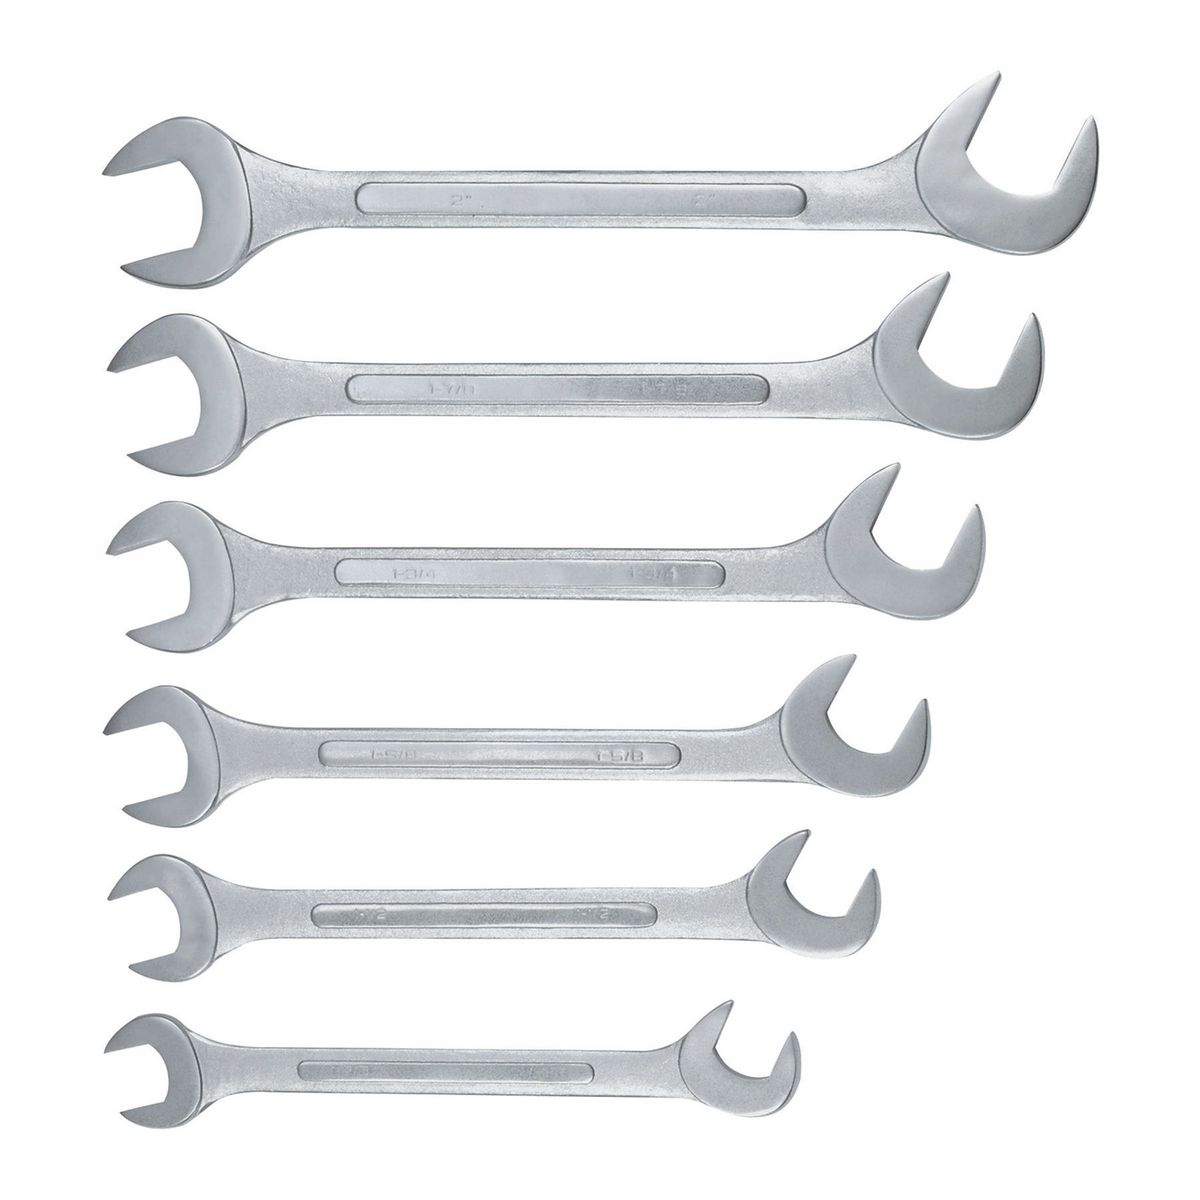 PITTSBURGH SAE Jumbo Angle Wrench Set 6 Pc. - Item 61515 / 34842